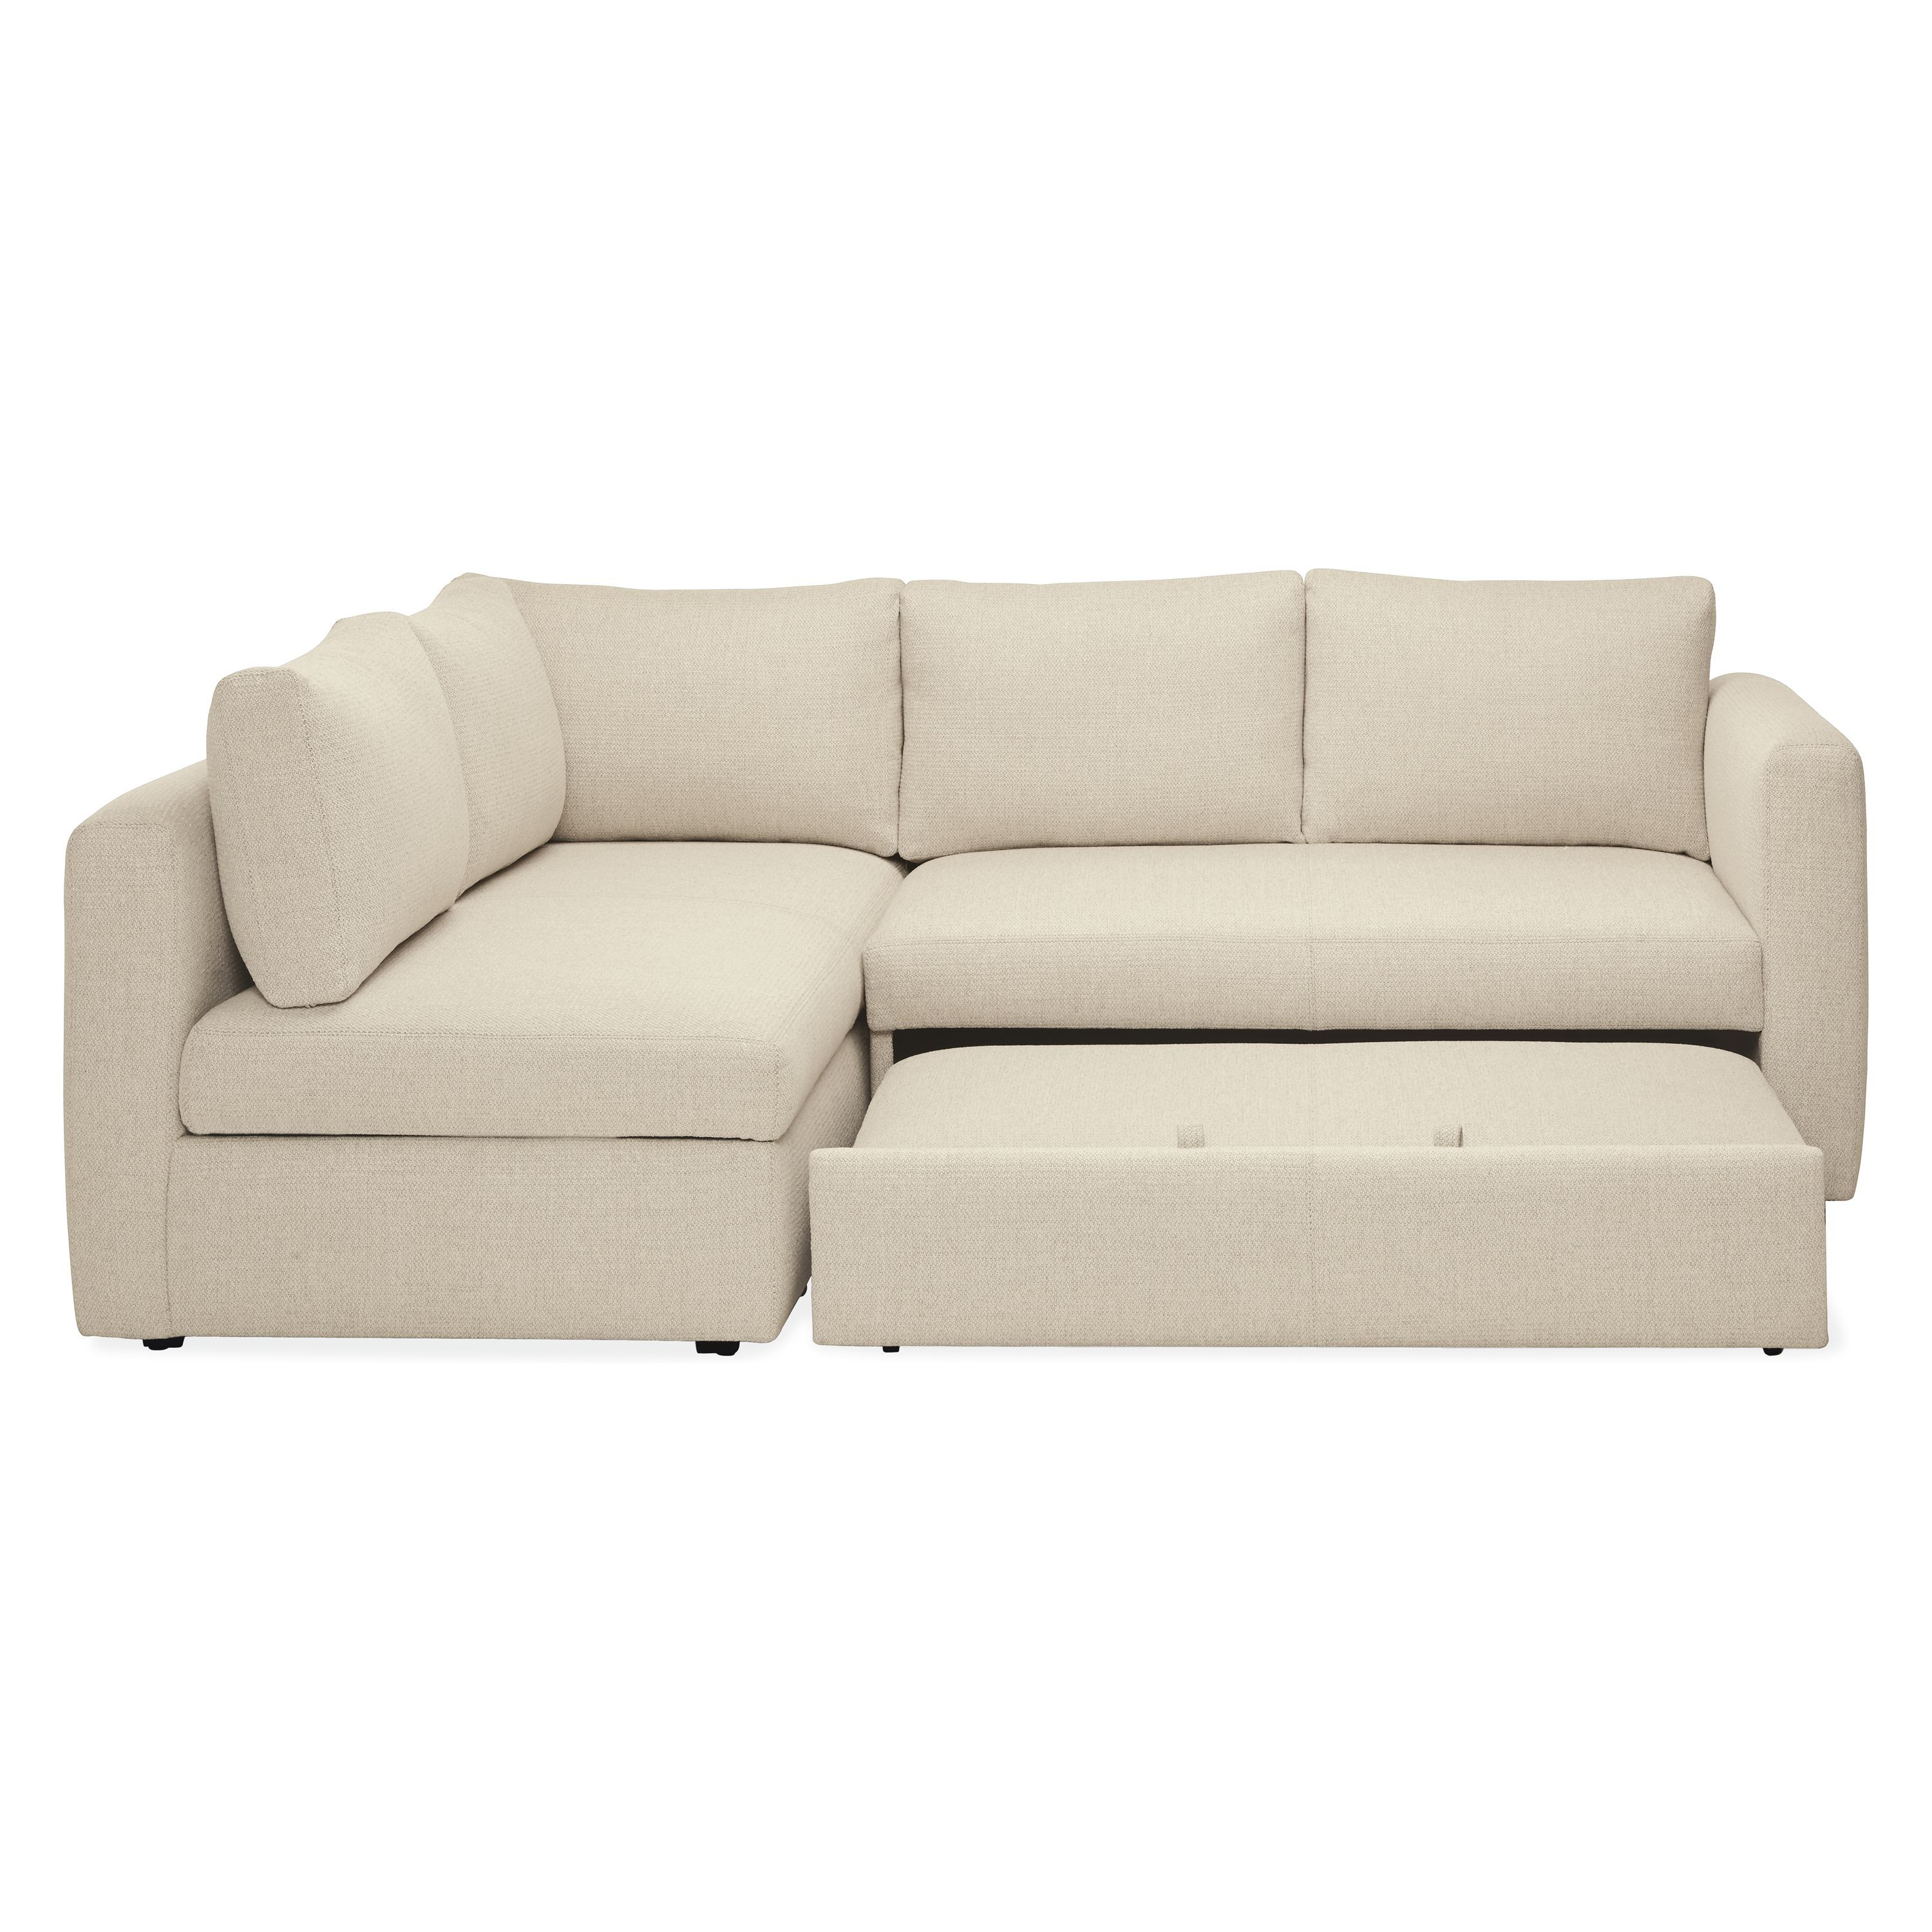 Room And Board Sleeper Sofa Comfort • Patio Ideas